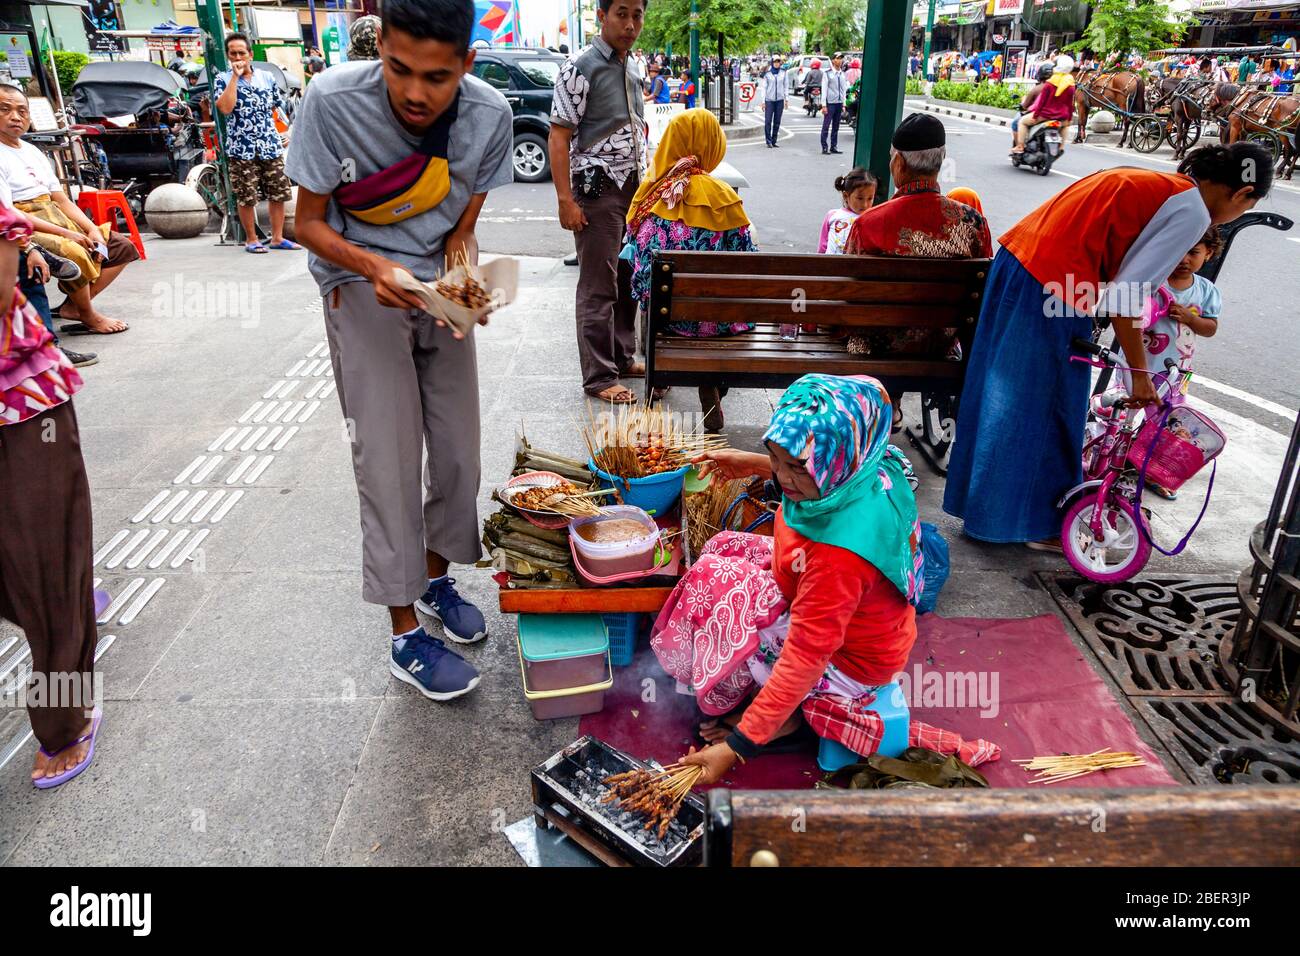 Une femme indonésienne vendant des collations dans la rue Malioboro, Yogyakarta, Indonésie. Banque D'Images